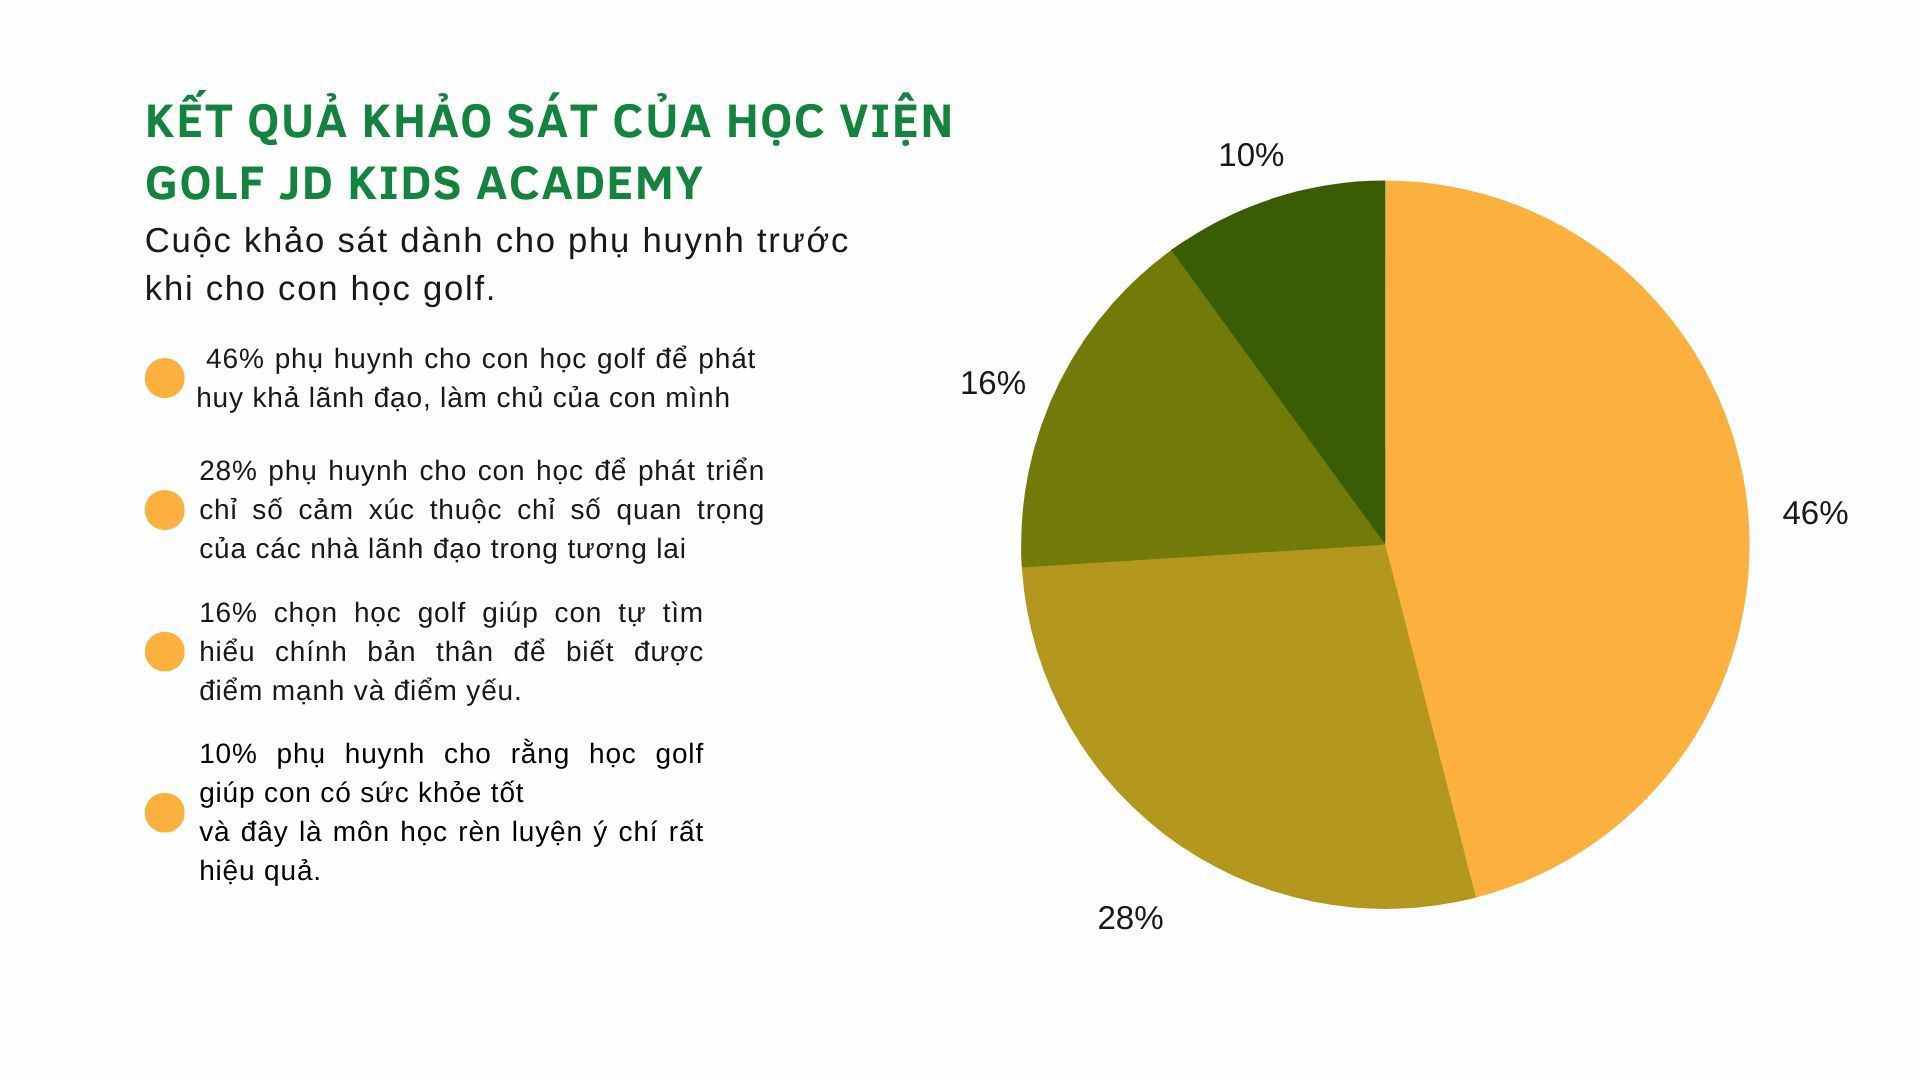 Biểu đồ thể hiện các chỉ số về mục đích cho con học golf của các bậc phụ huynh